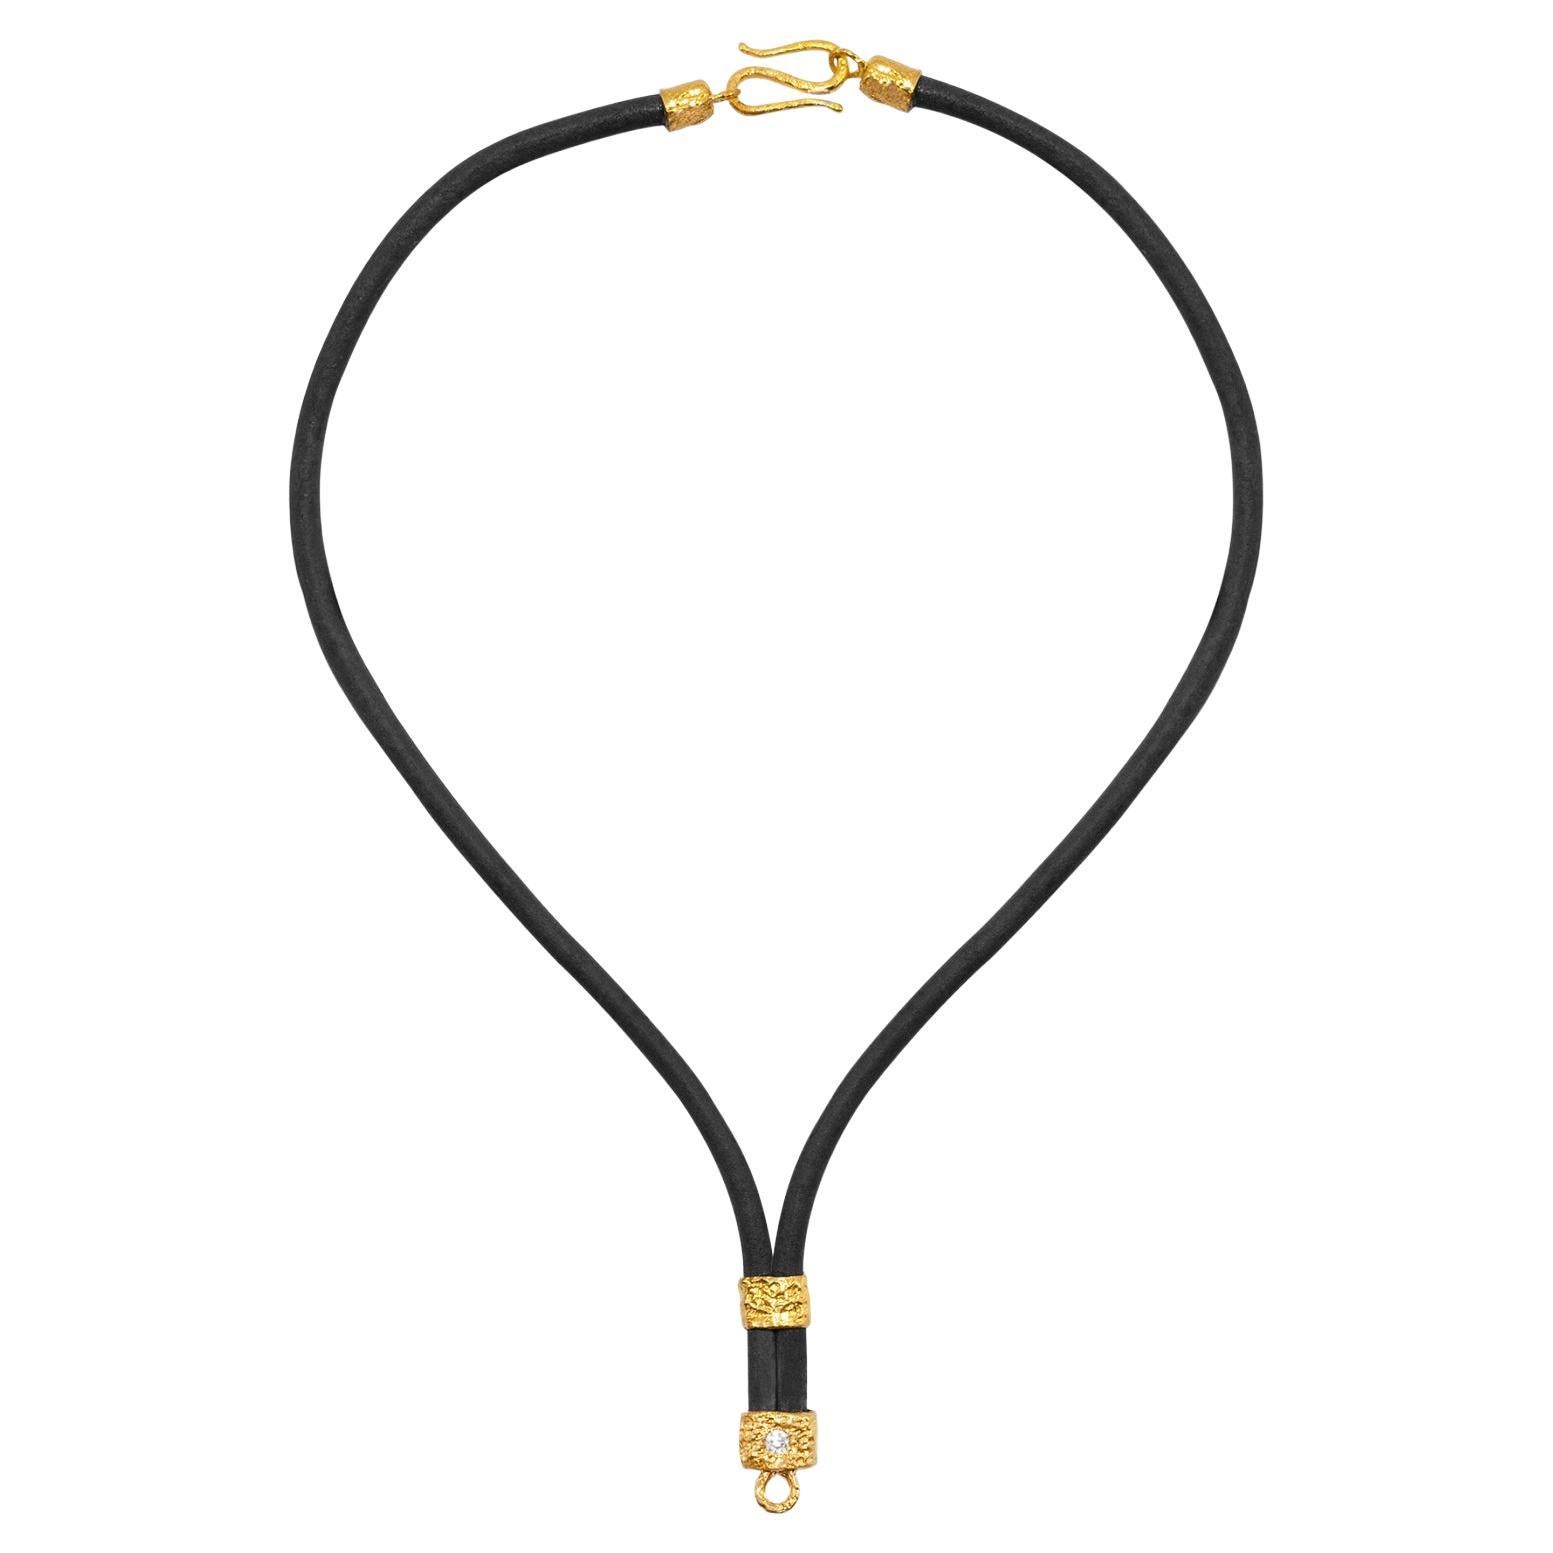 Die Allegra-Halskette aus Leder und 22-karätigem Gold in Schwarz, von Tagili